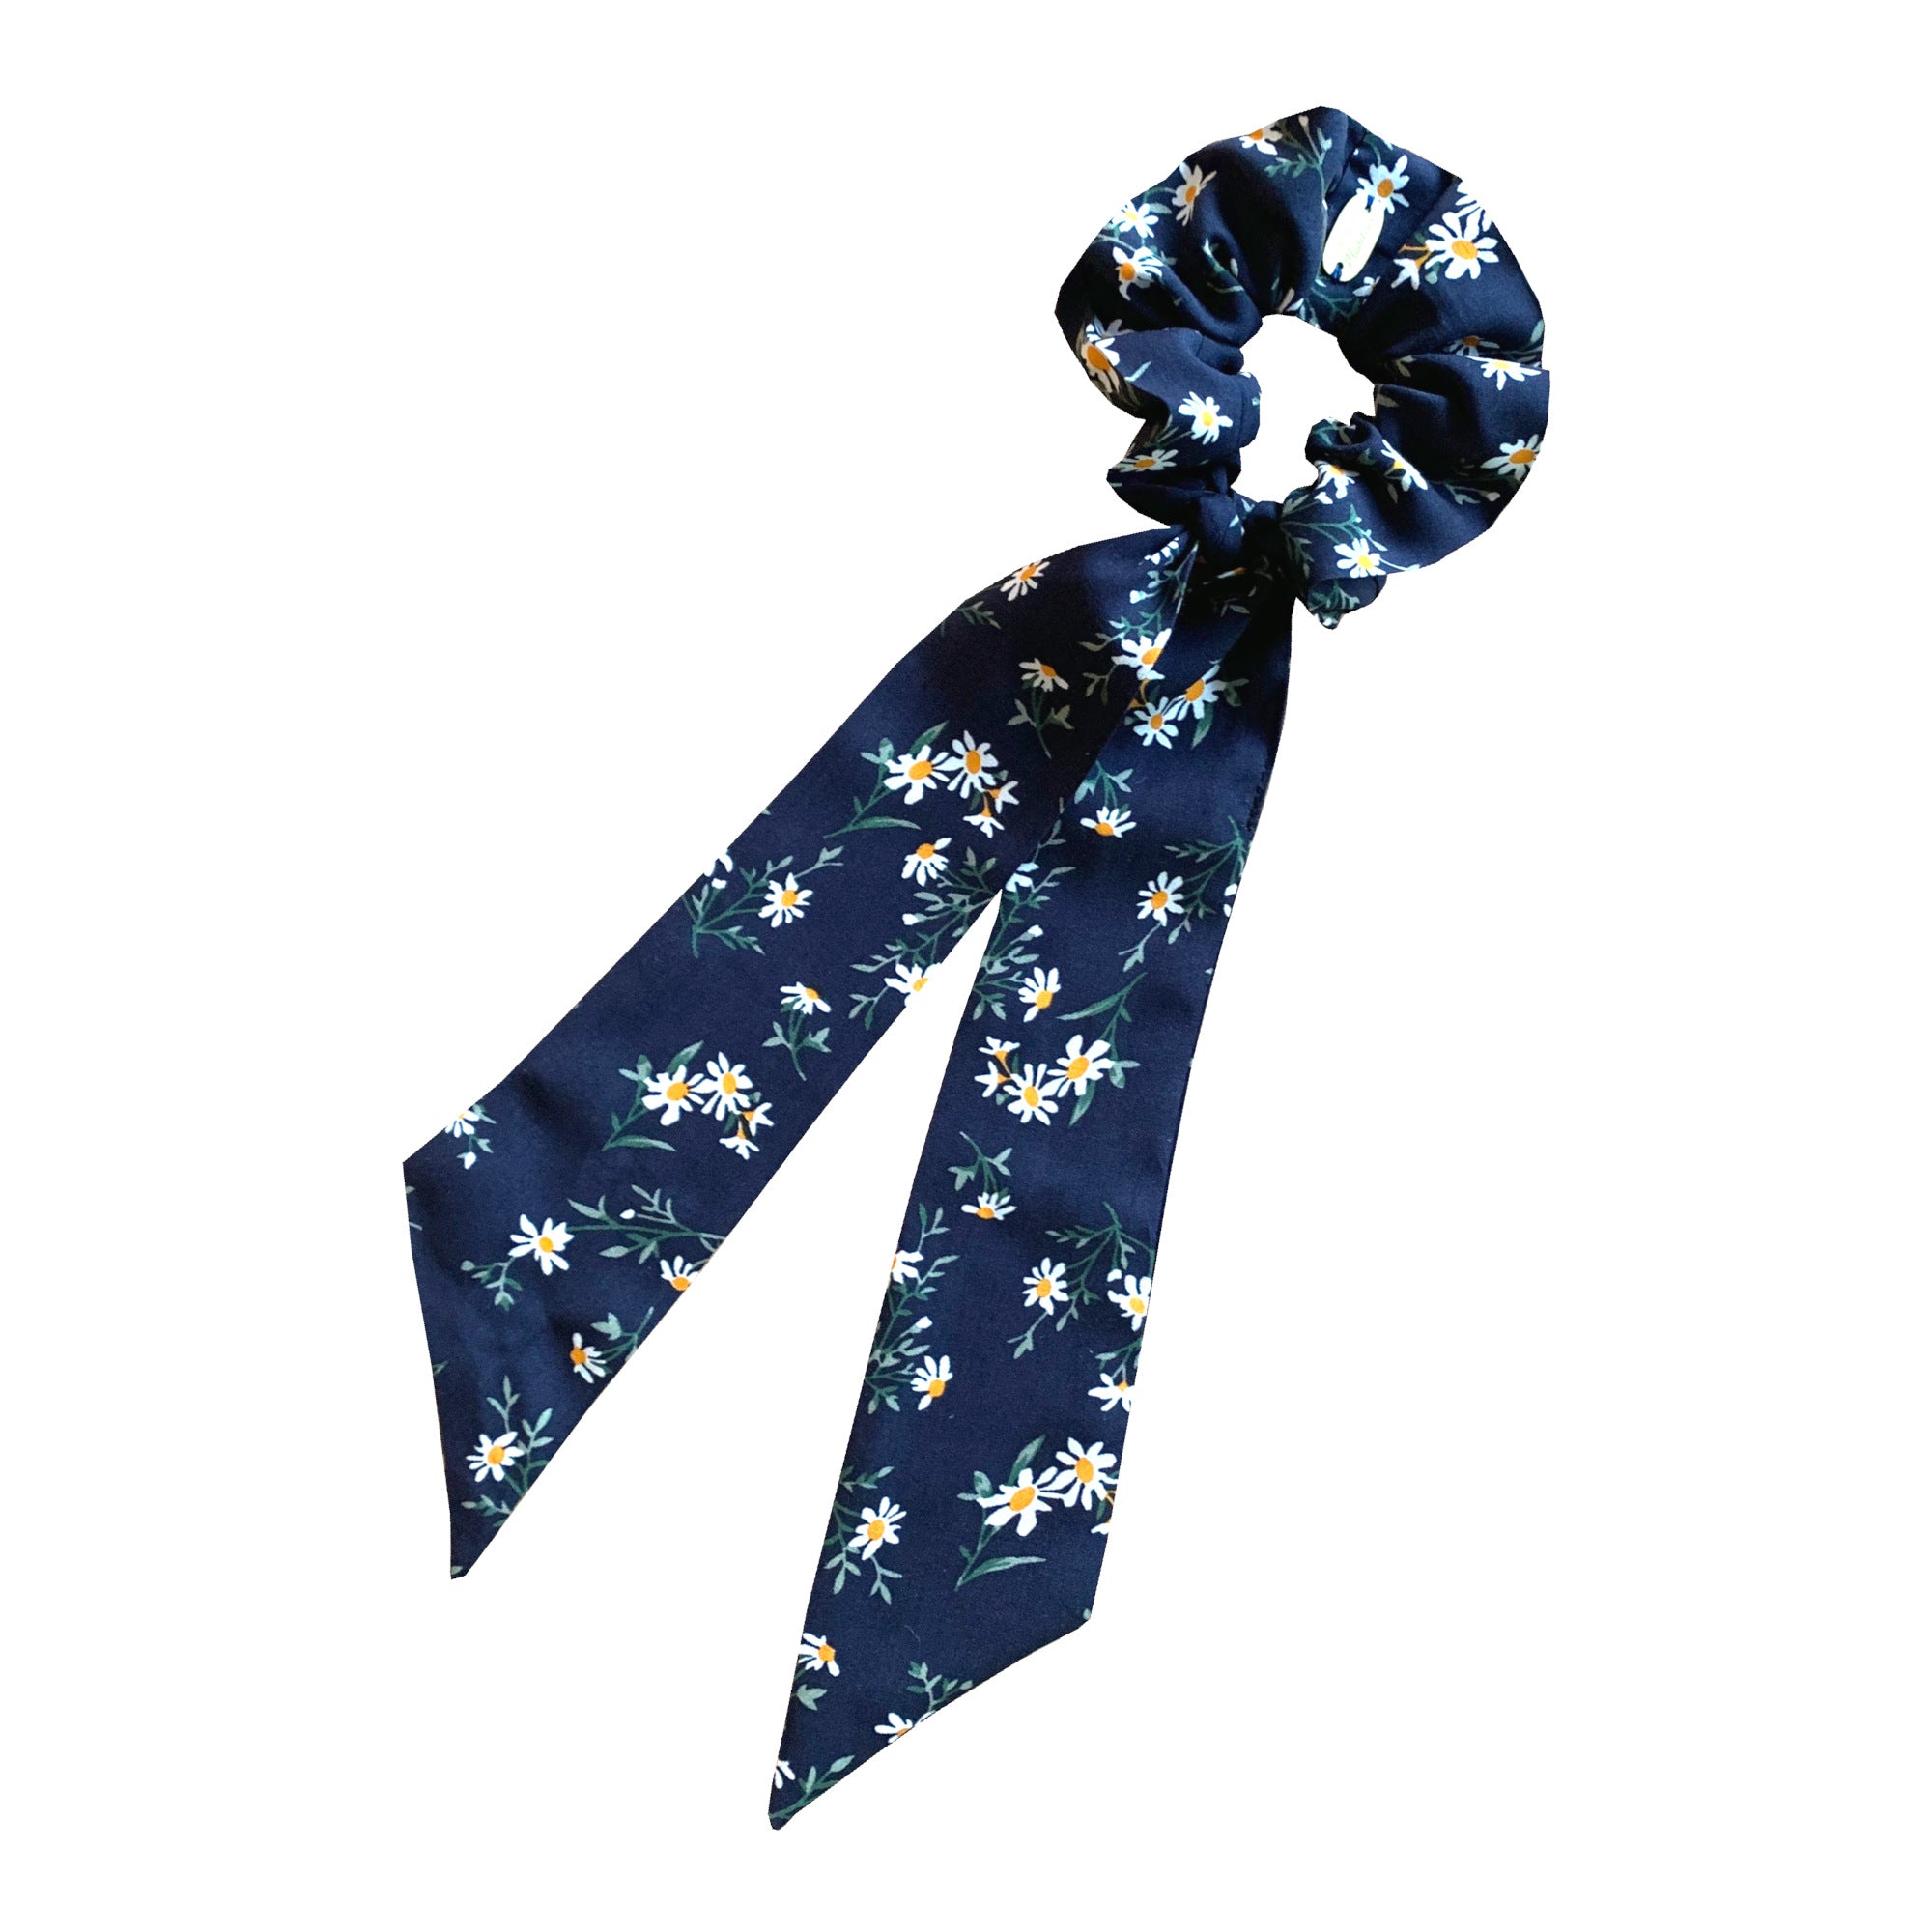 Chouchou foulard bleu marine imprimé Marguerite made in France Atelier madeleine